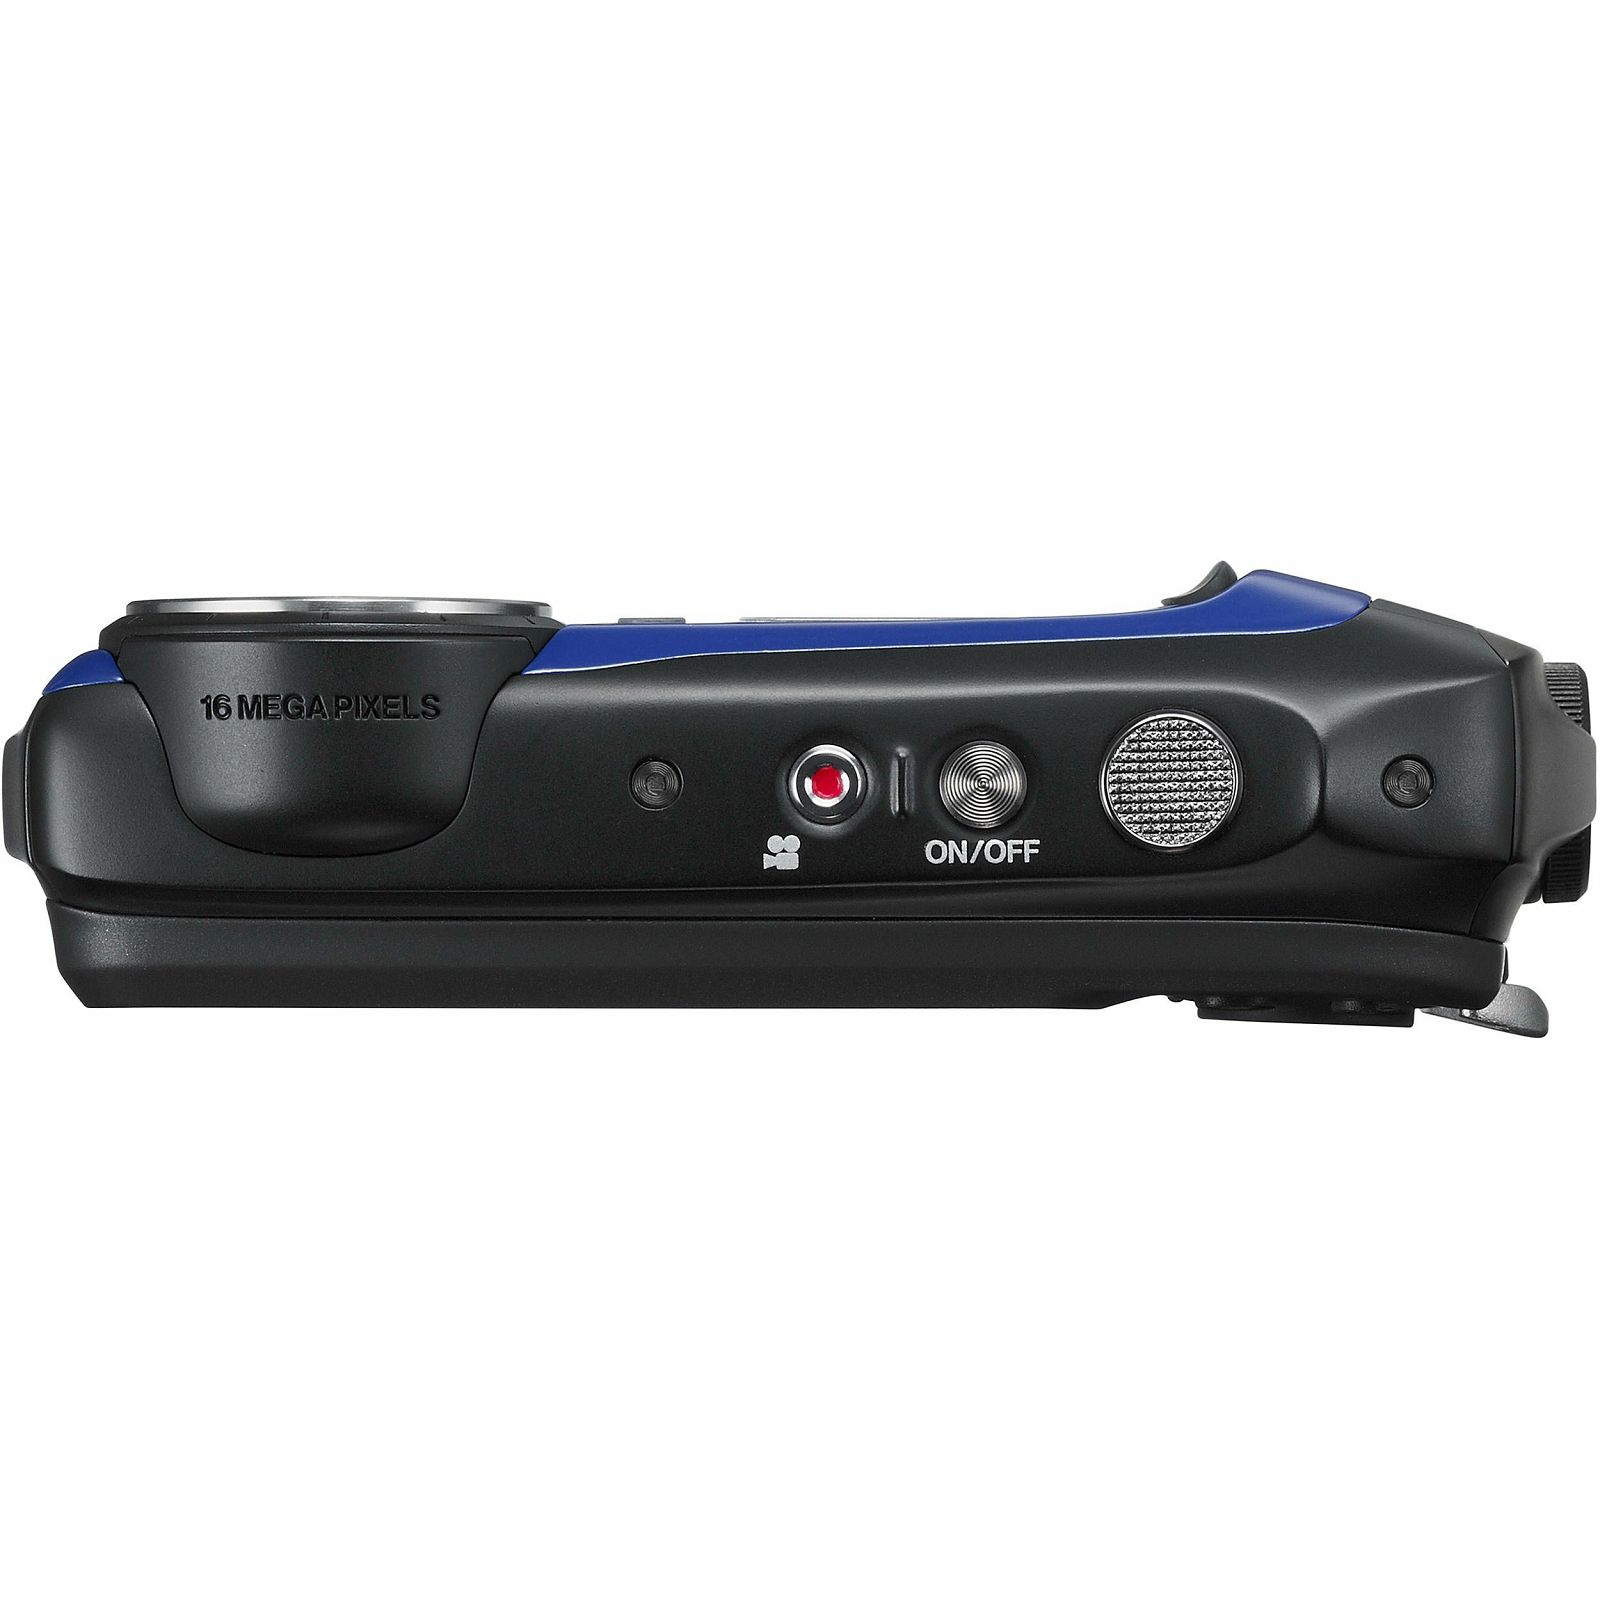 Fuji FinePix XP90 Blue Fujifilm XP-90 plavi vodootporni podvodni digitalni fotoaparat WiFi remote 5x zoom 16.4Mpx 28mm BSI-CMOS sensor Digital camera